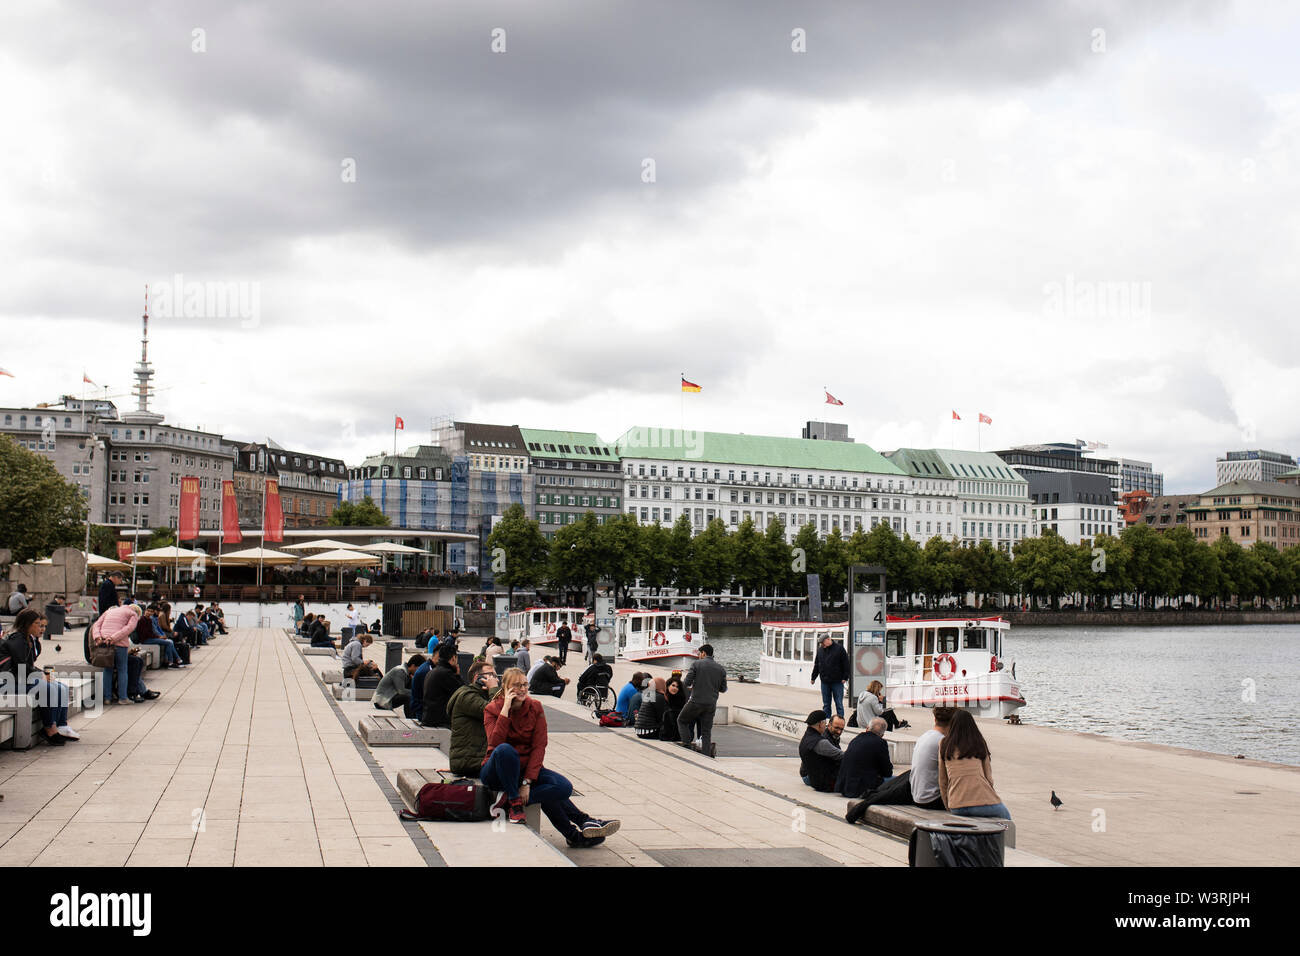 Le persone si riuniscono lungo il Binnenalster, un lago artificiale nel centro di Amburgo, in Germania, alimentato dal fiume Alster, dove attraccano le barche da tour sulla terrazza. Foto Stock